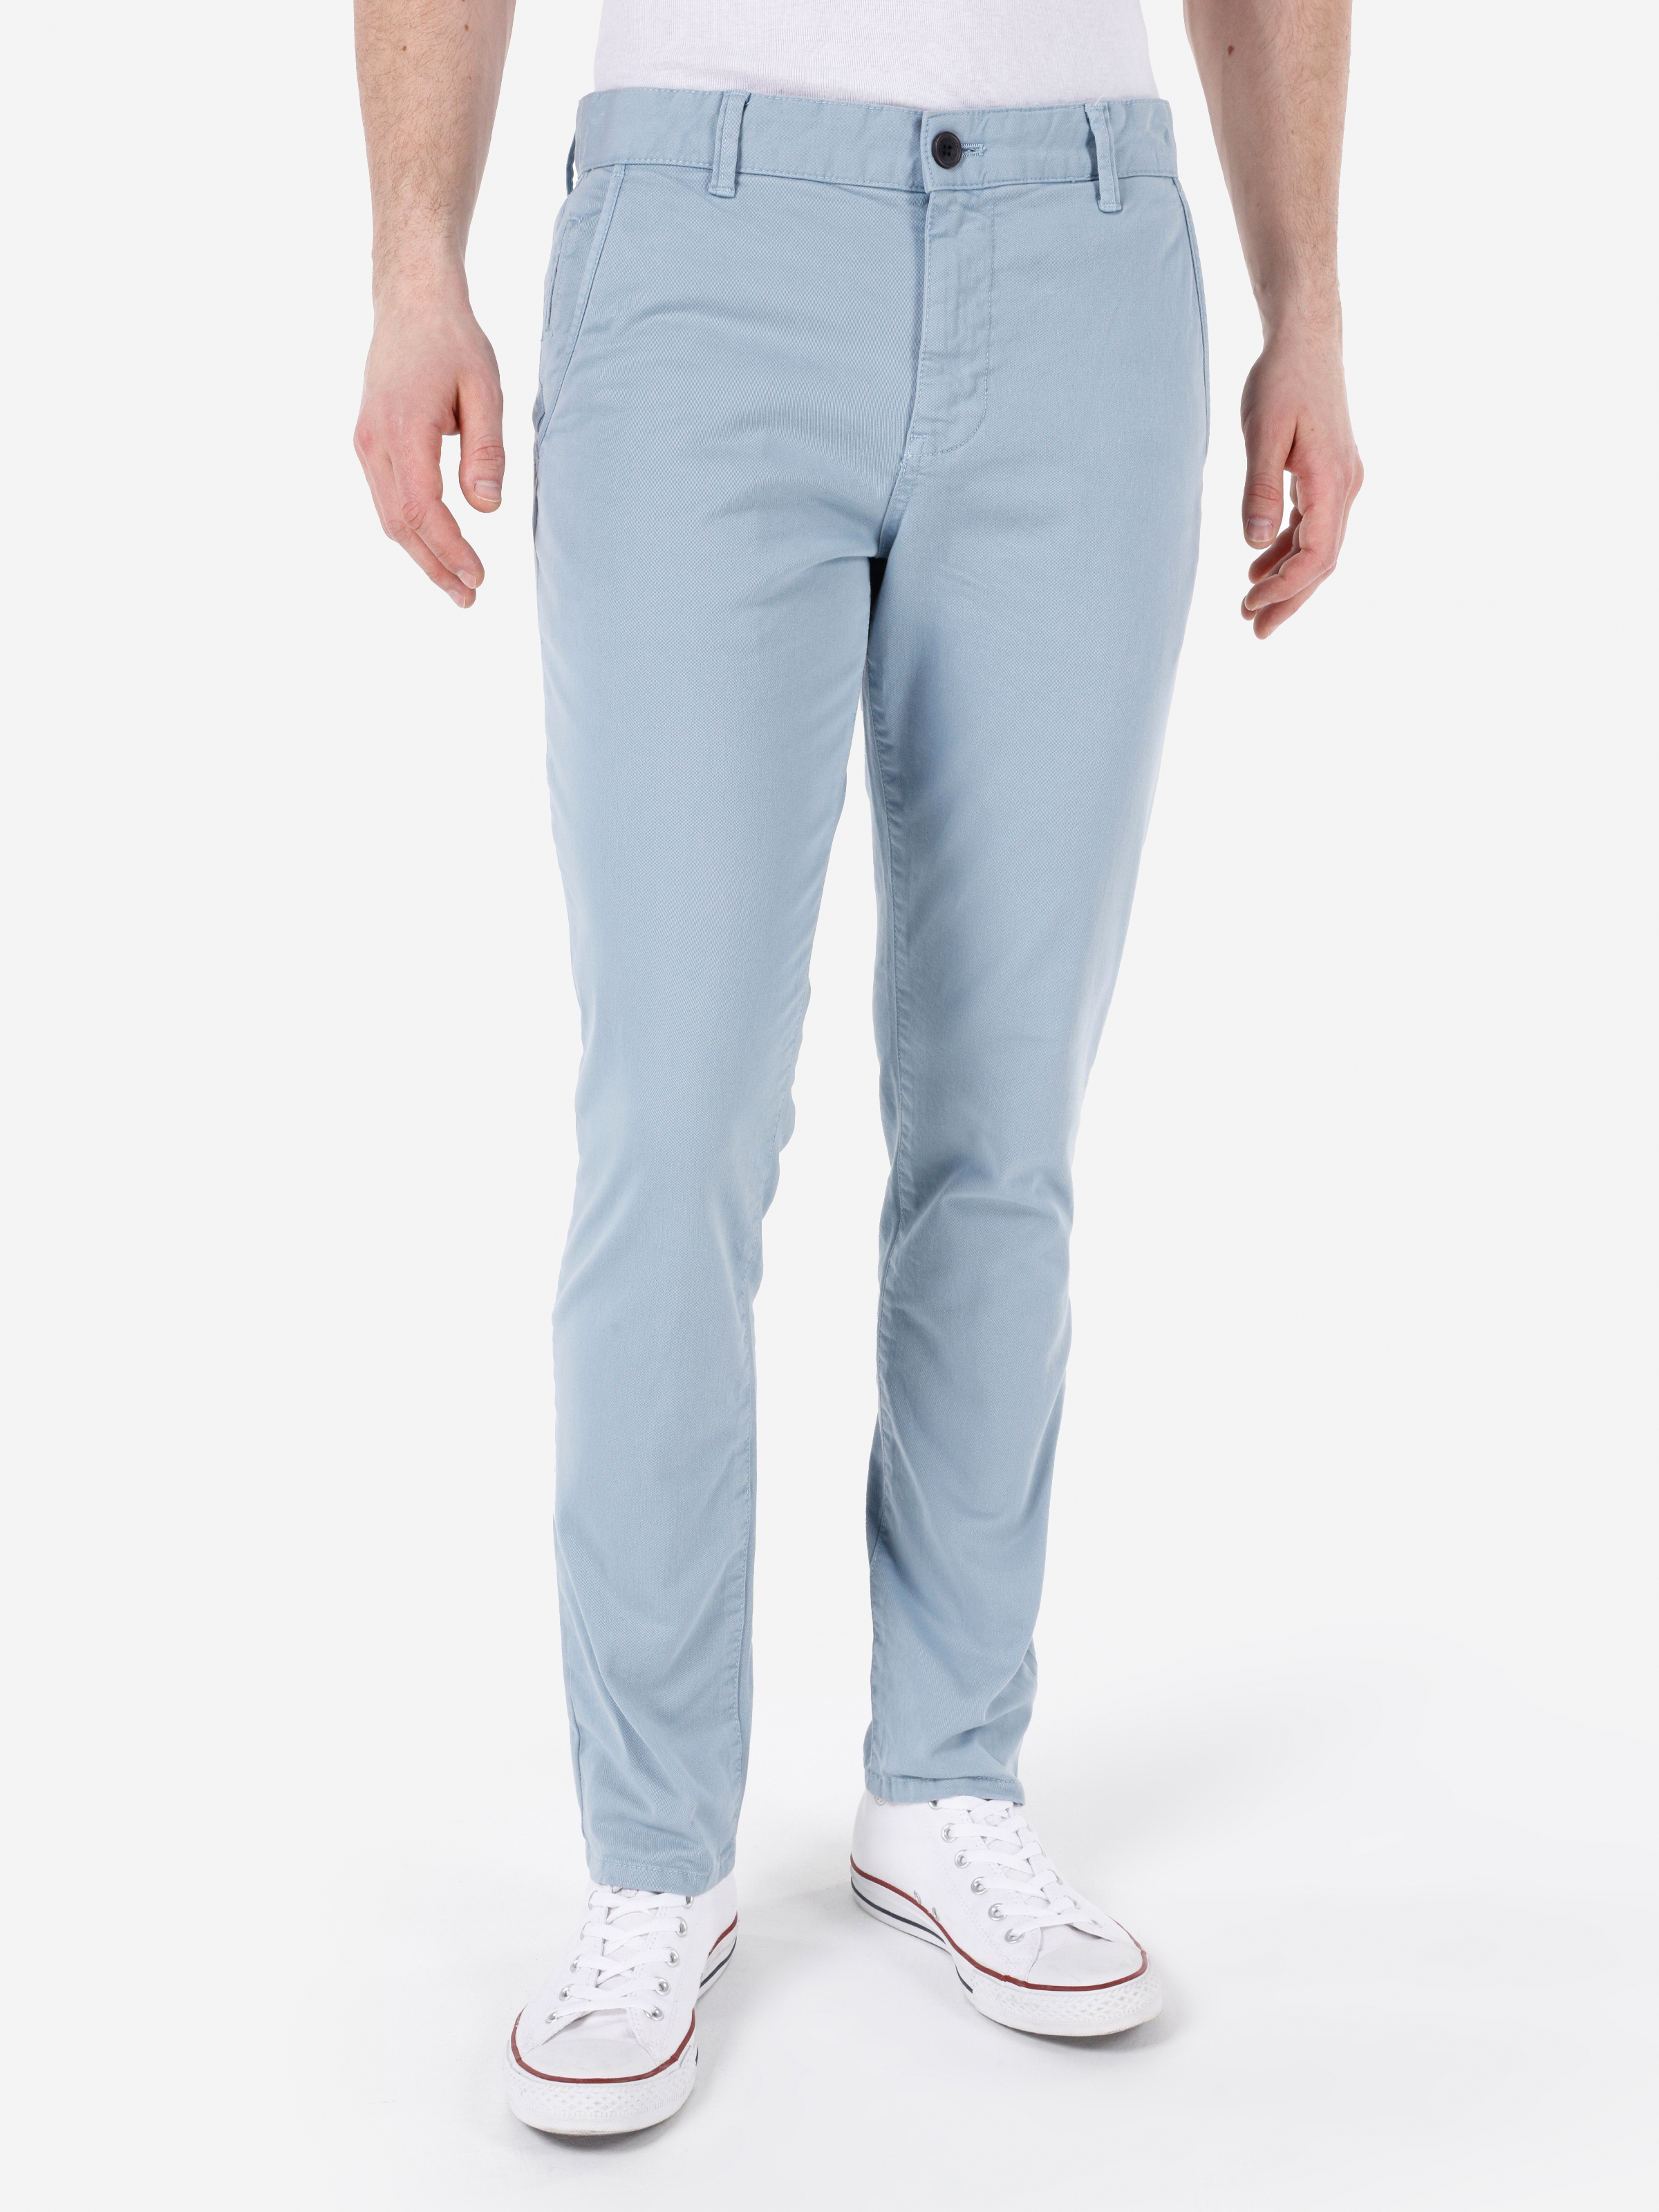 Afficher les détails de Pantalon Bleu Clair Pour Homme, Coupe Slim, Taille Moyenne, Jambe Droite